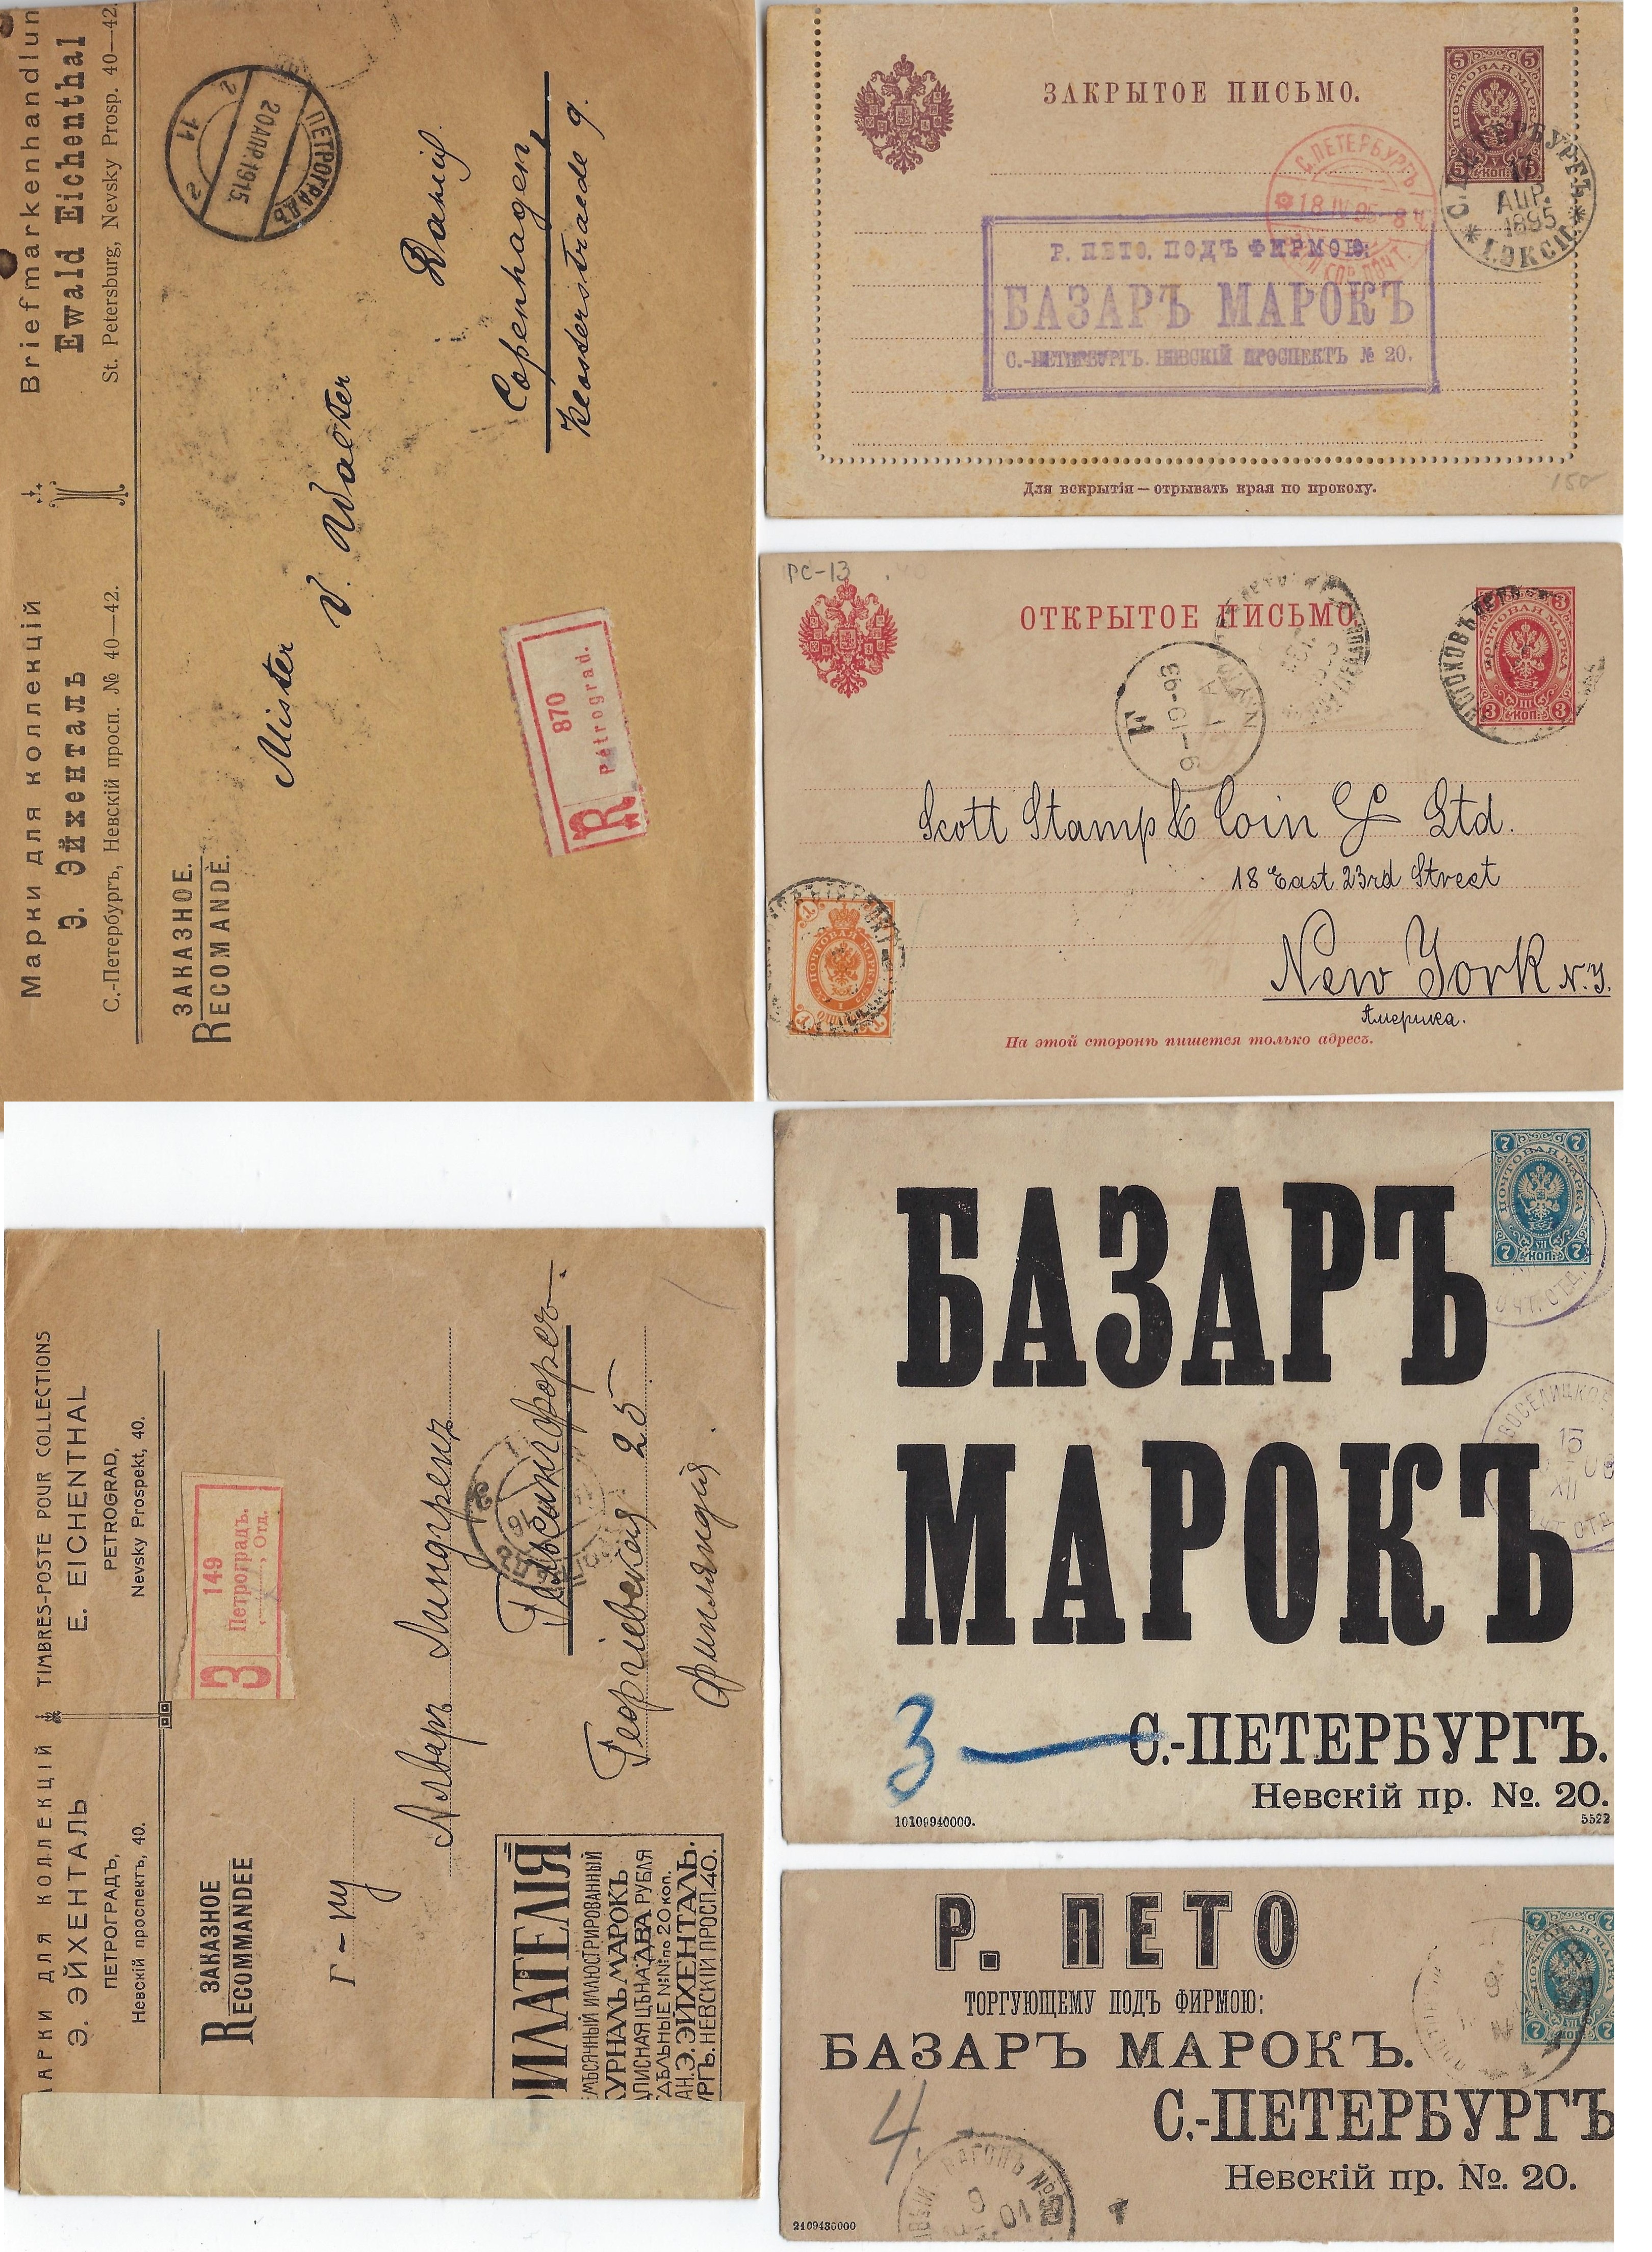 Russia Postal History - Postmarks postmarks Scott 00 